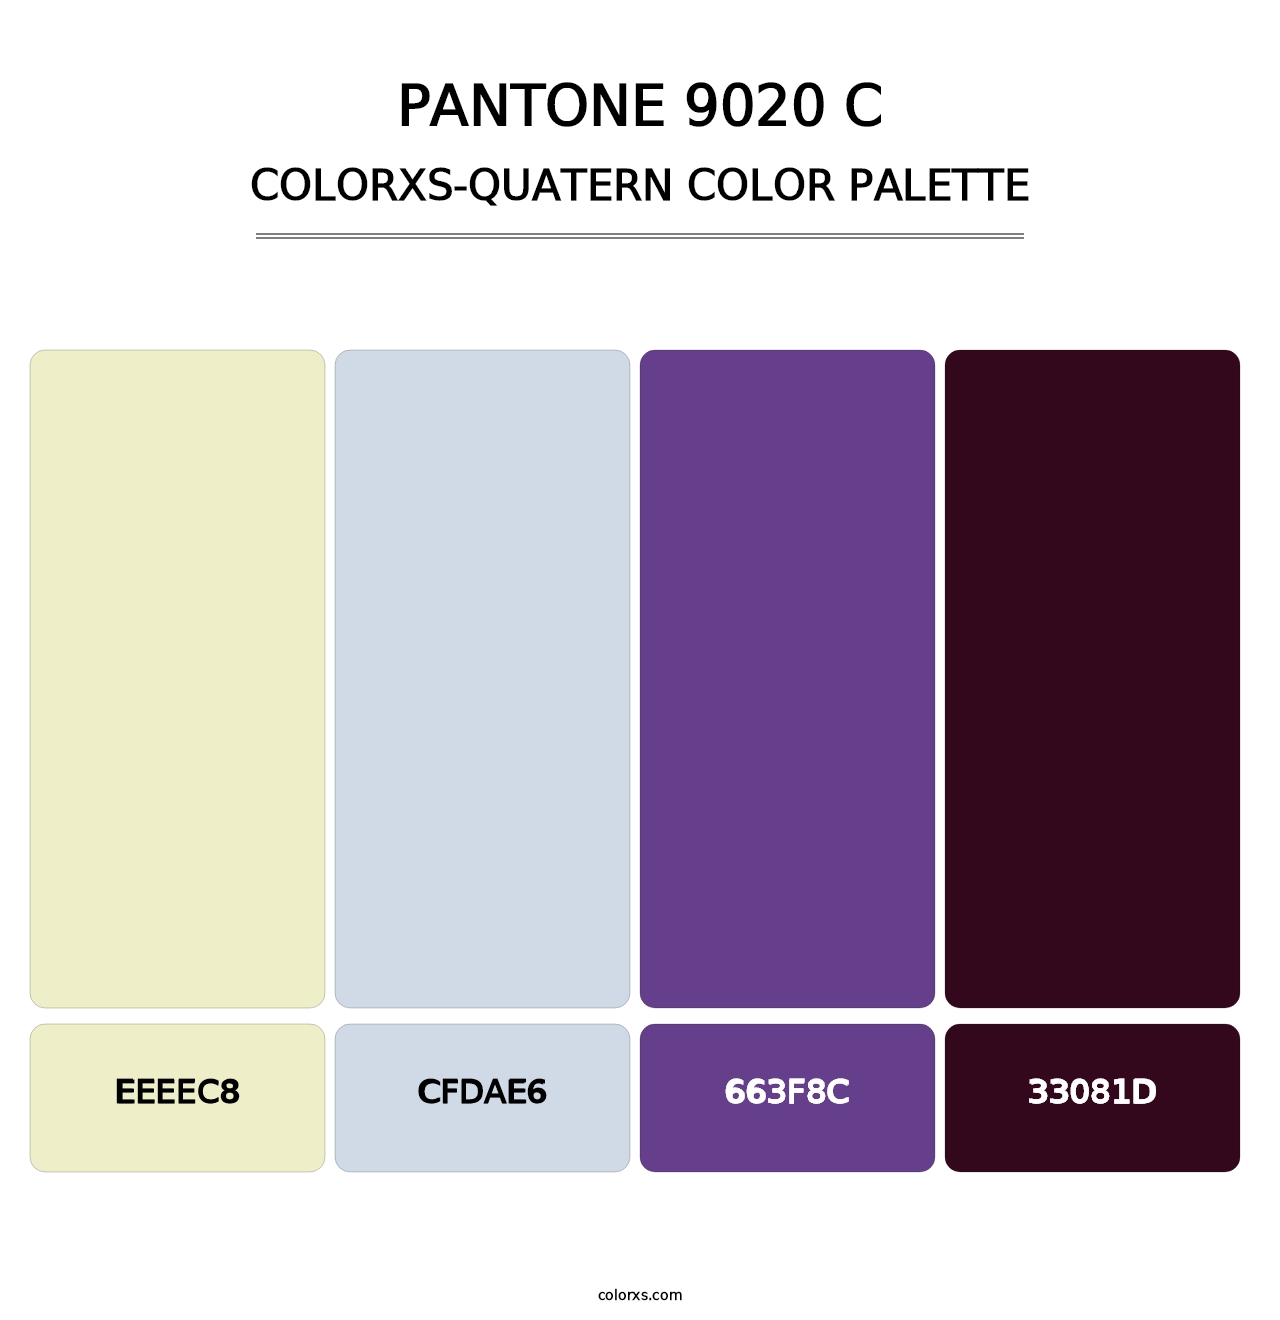 PANTONE 9020 C - Colorxs Quatern Palette